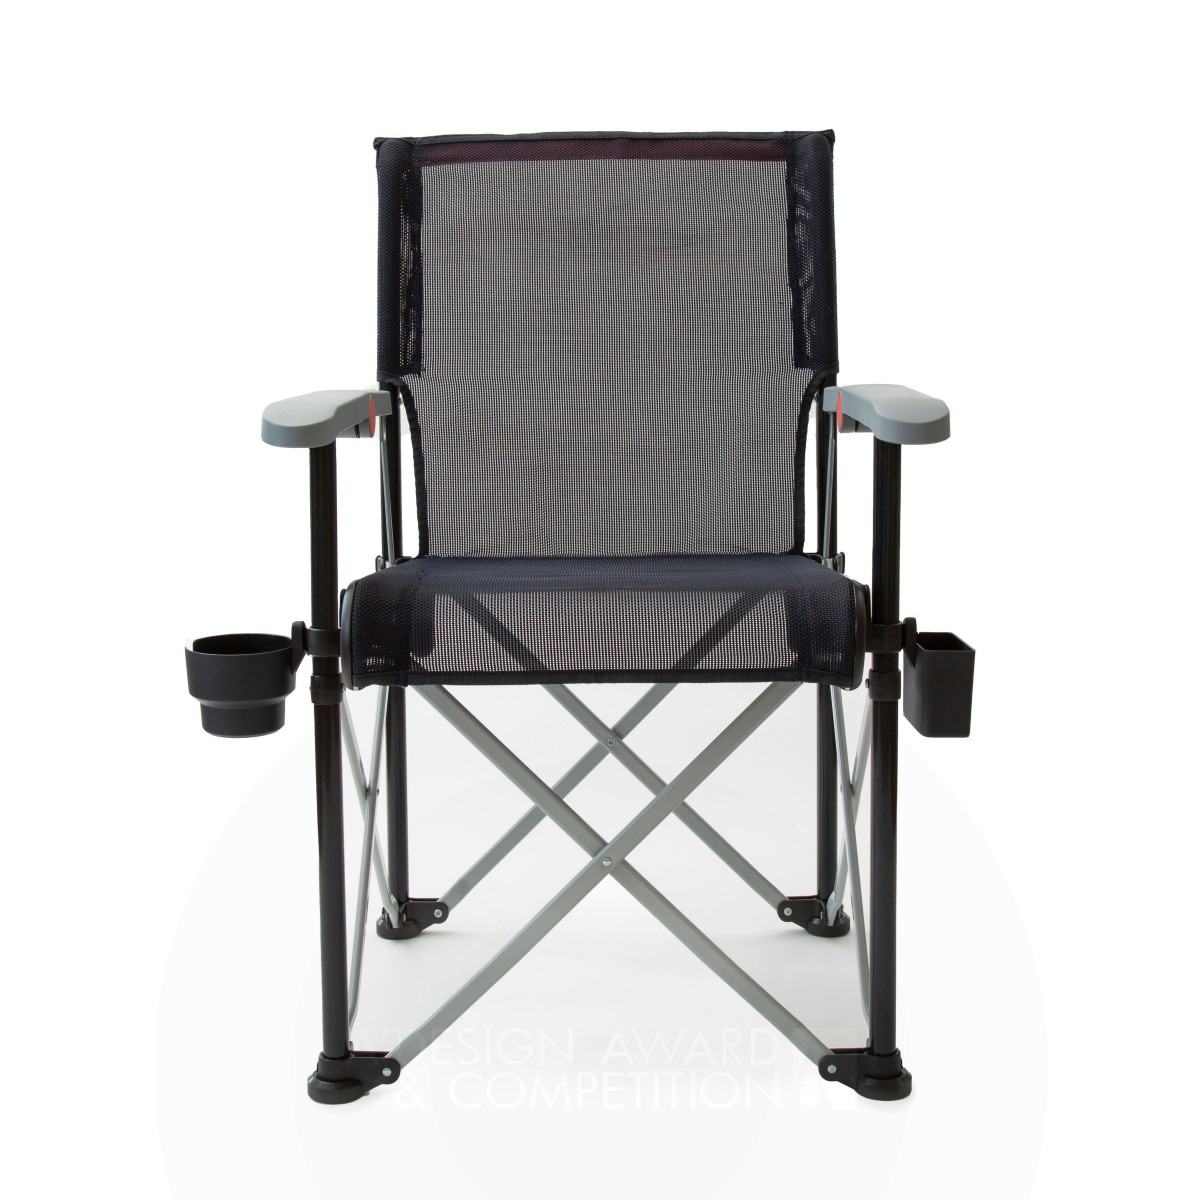 Ben Knepler Outdoor Folding Chair